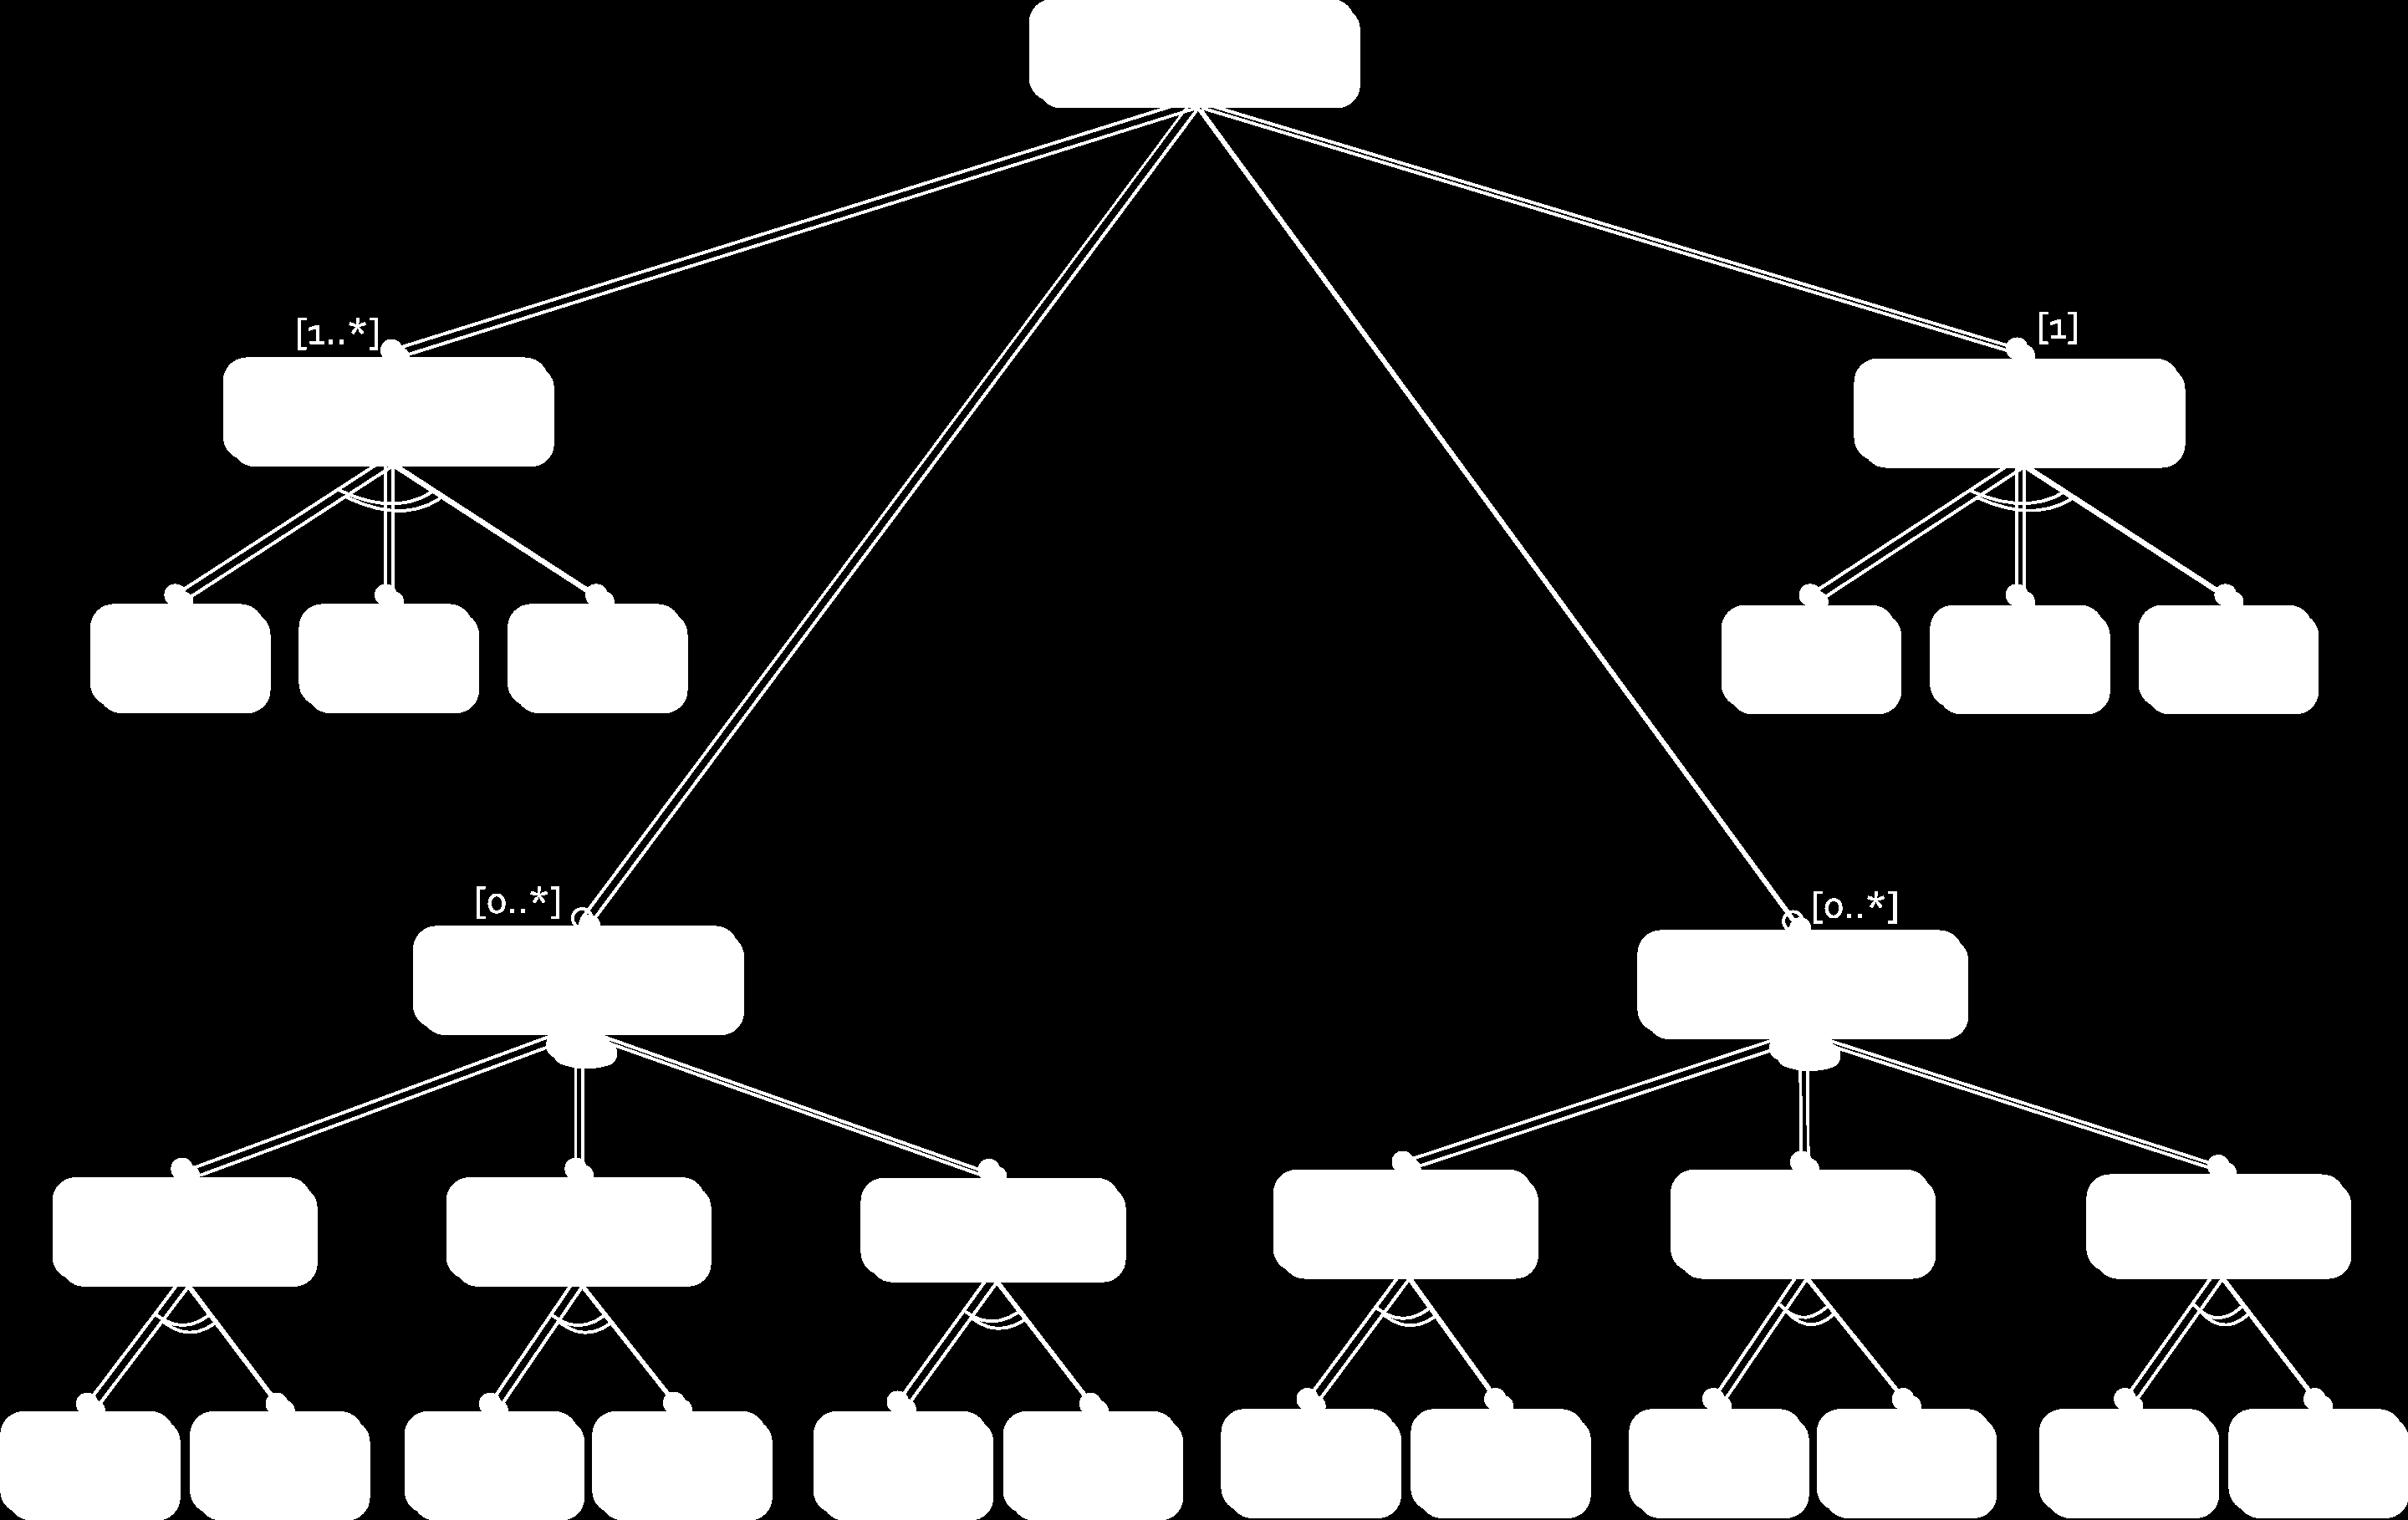 Capítulo 4. Implementação do Sistema funcionalidades. Estas funcionalidades são representadas com um círculo preenchido a preto.